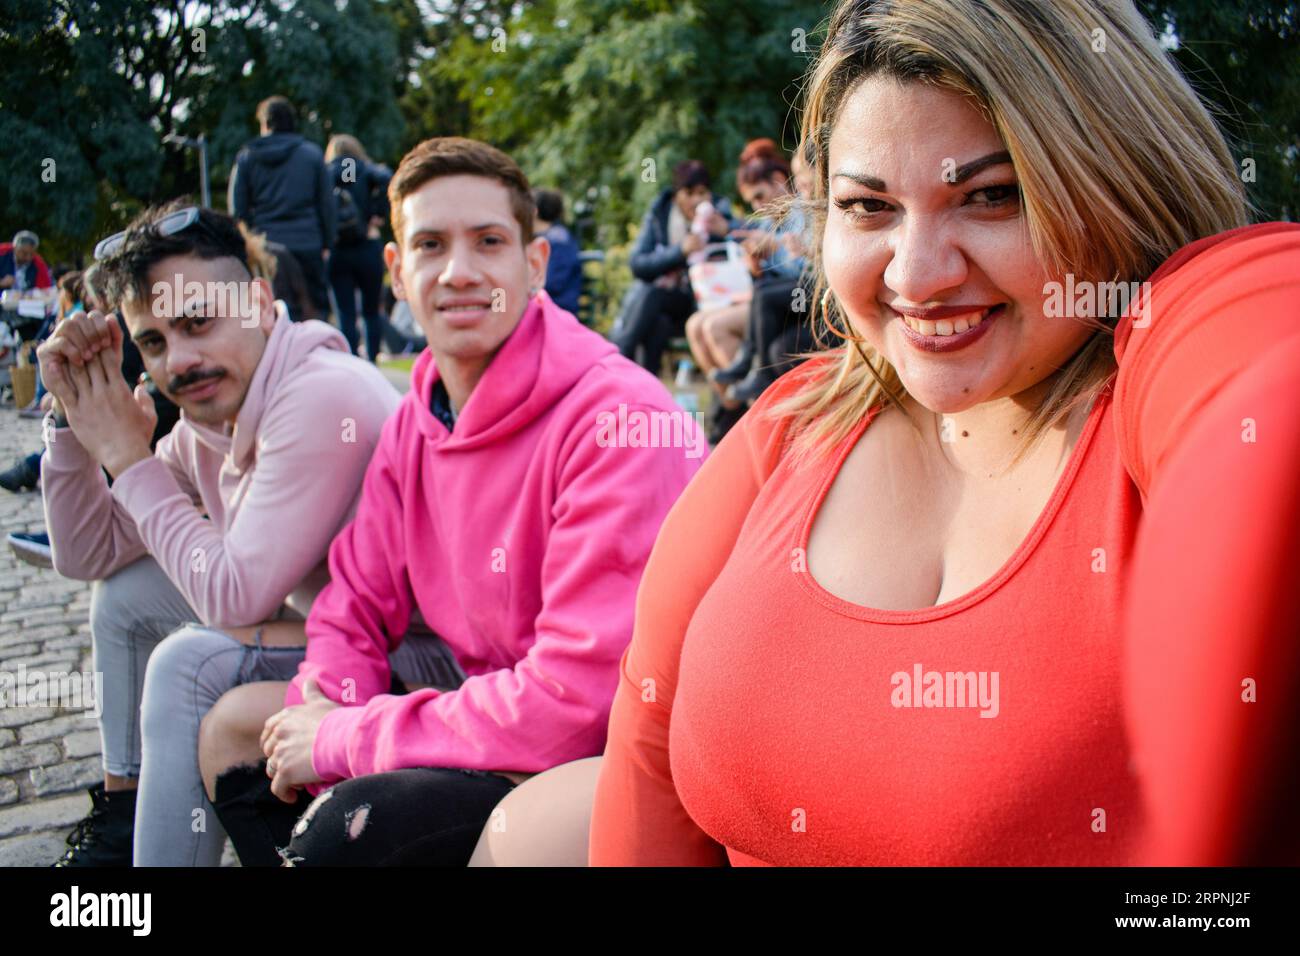 Ritratto selfie di tre giovani latini argentini, due uomini della comunità LGBT e una donna in taglia più che sorride e guarda la macchina fotografica Foto Stock